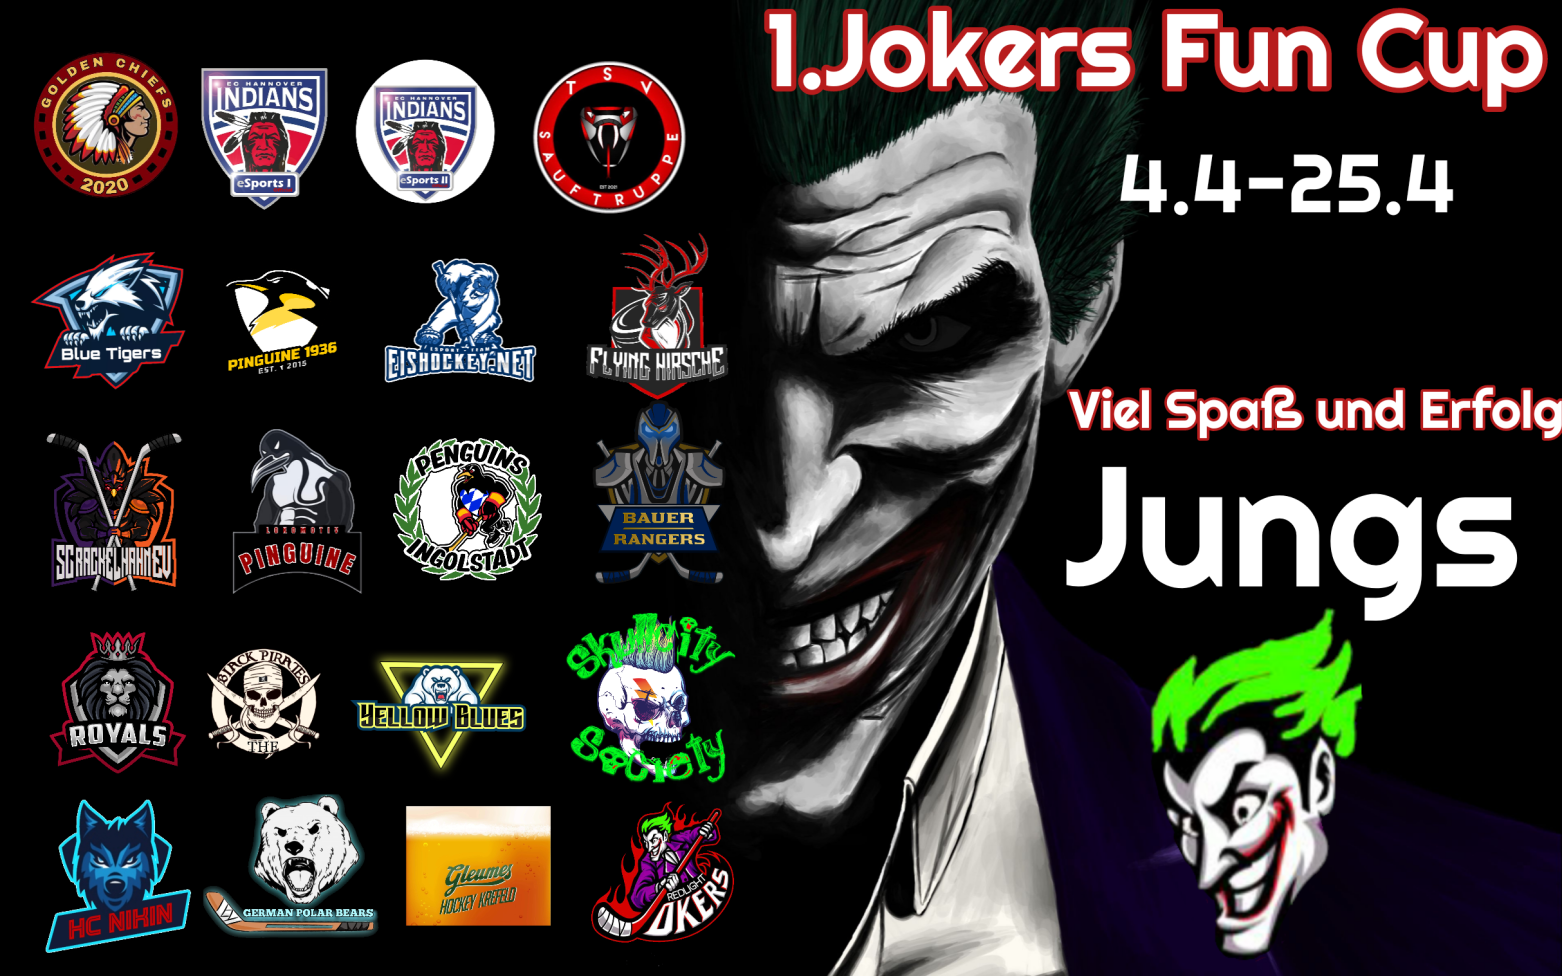 Jokers-Fun-Cup